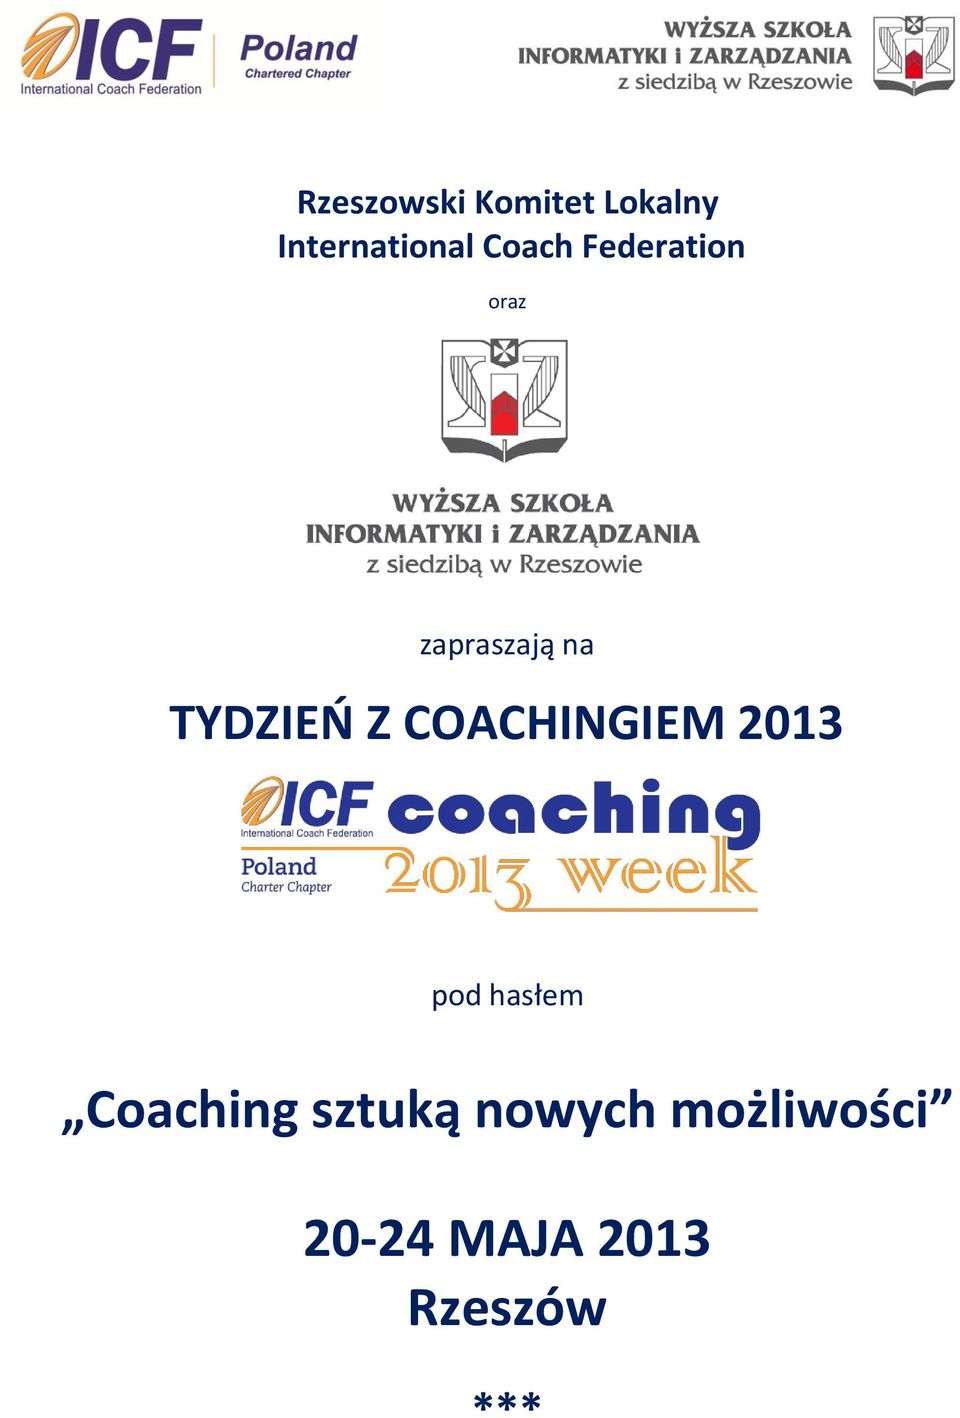 Z COACHINGIEM 2013 pod hasłem Coaching